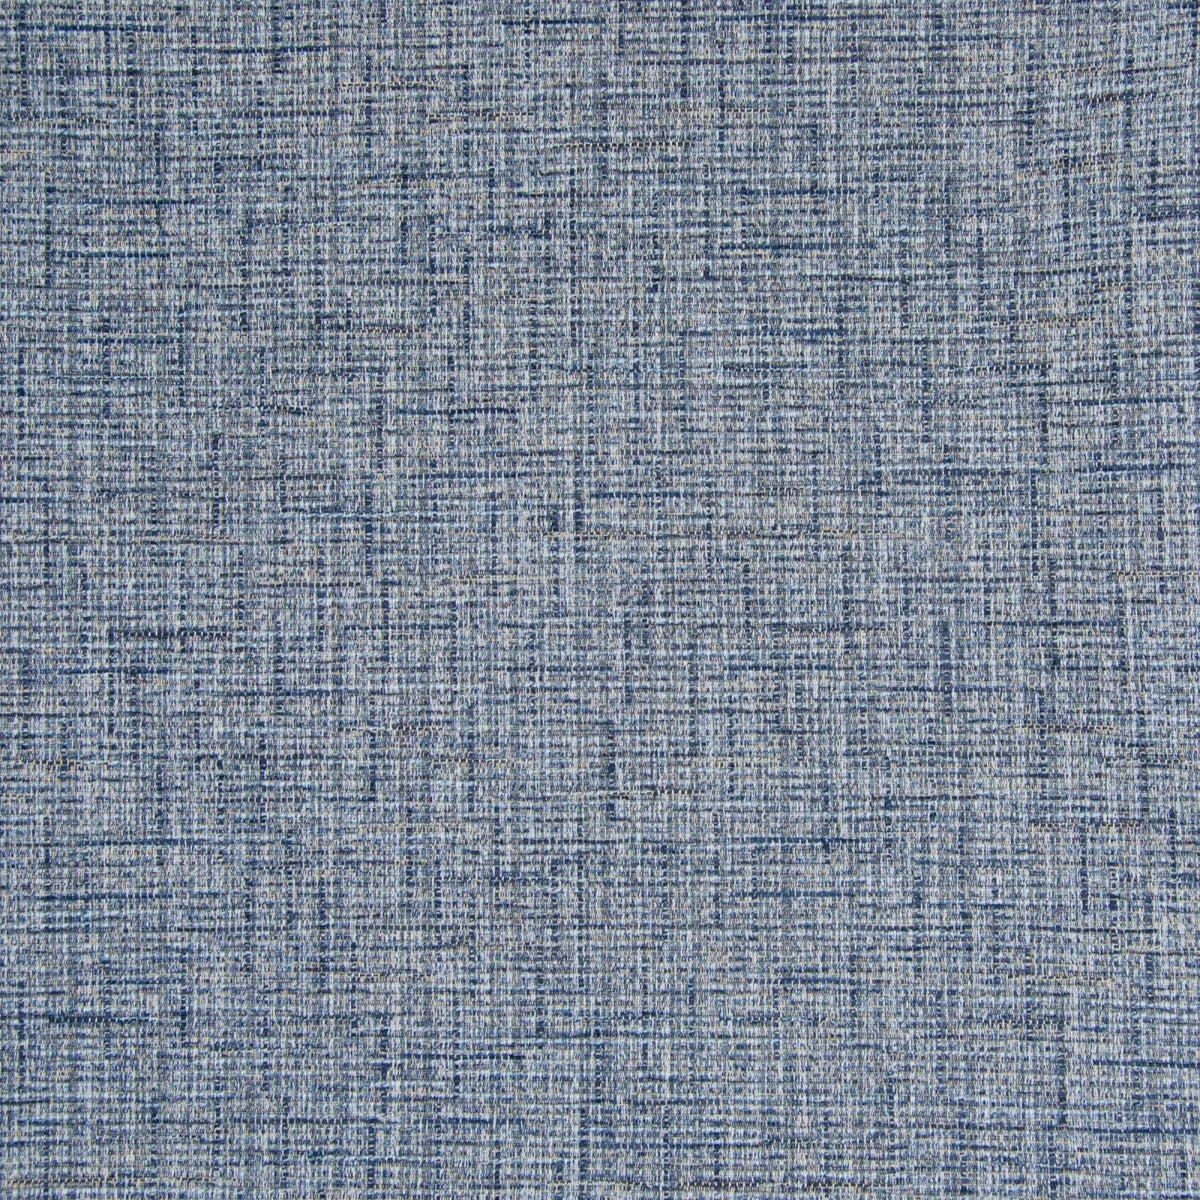 B7559 Lagoon - Atlanta Fabrics